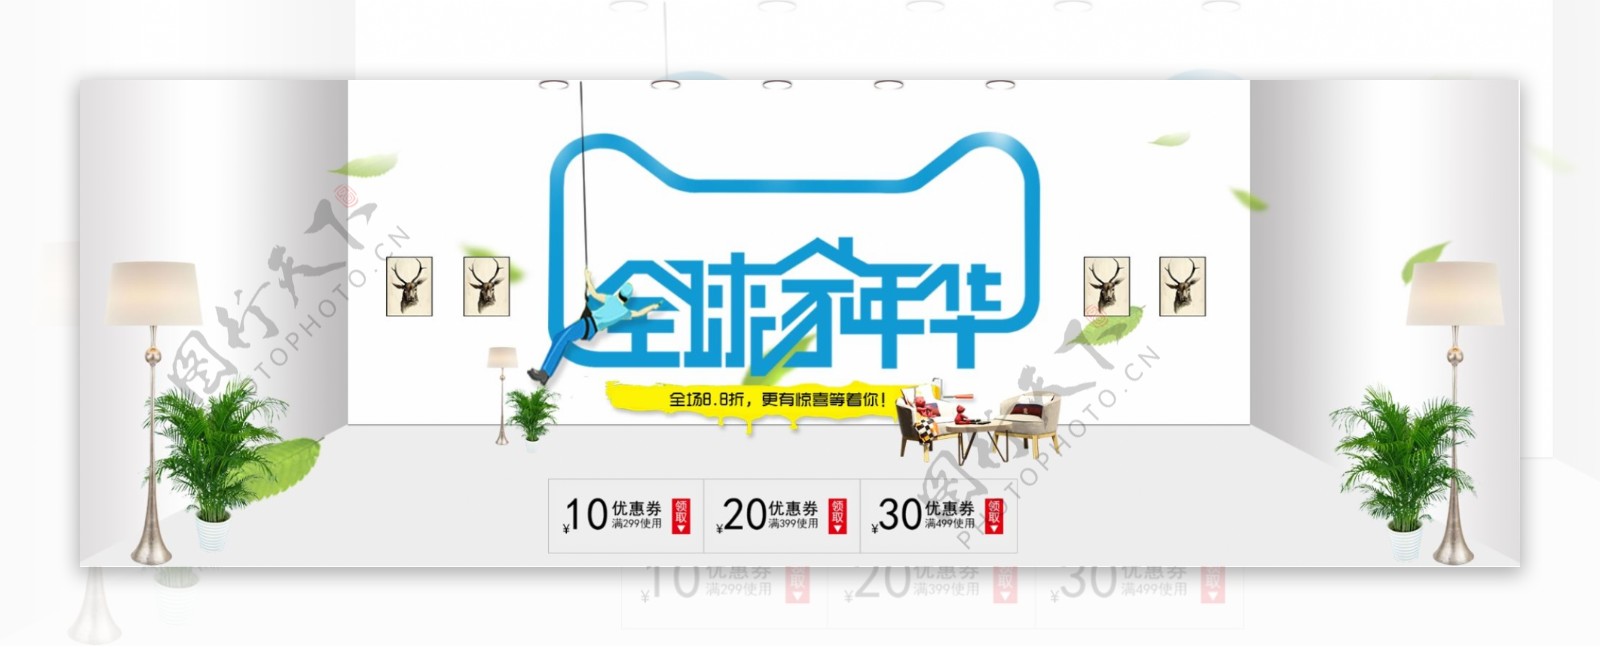 电商淘宝天猫全球嘉年华家居家具促销banner海报模板设计装修